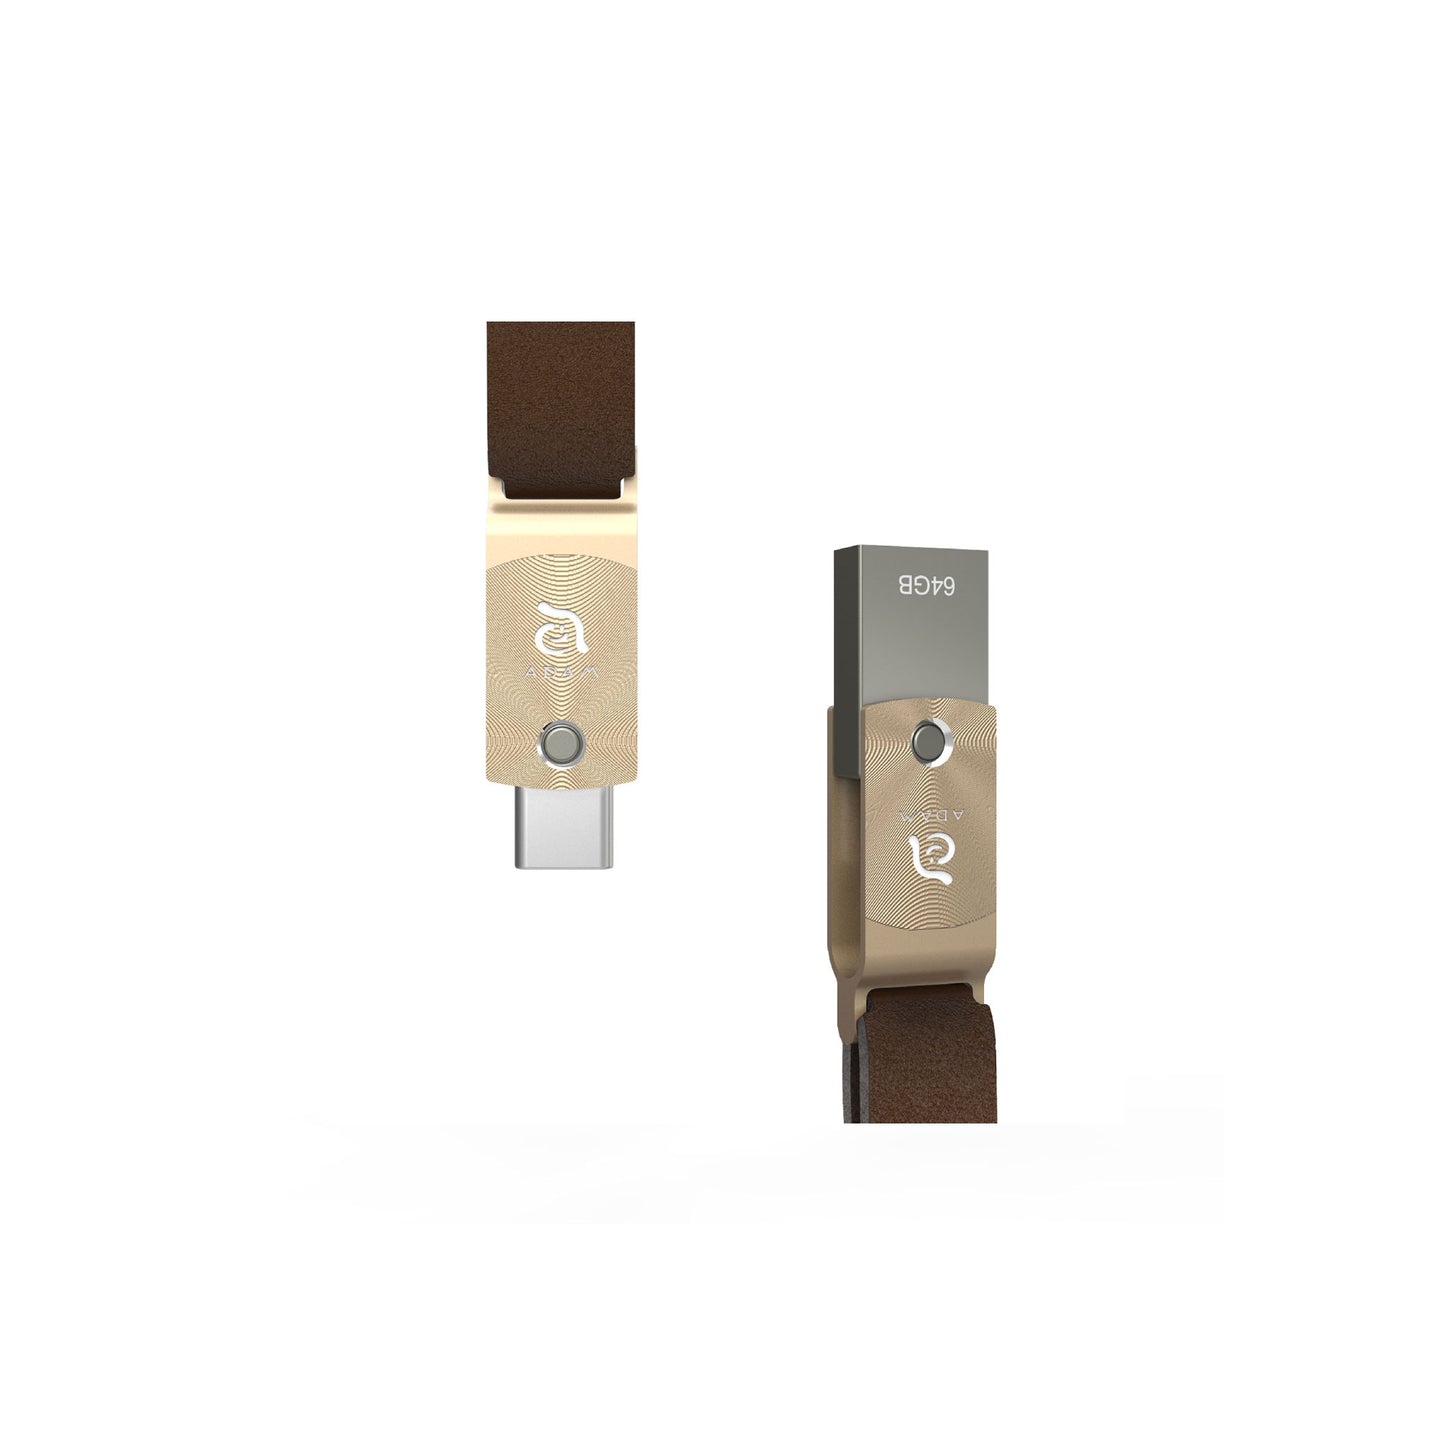 ADAM ELEMENTS Roma USB C to USB 3.0 OTG 64GB Flash Drive - Gold